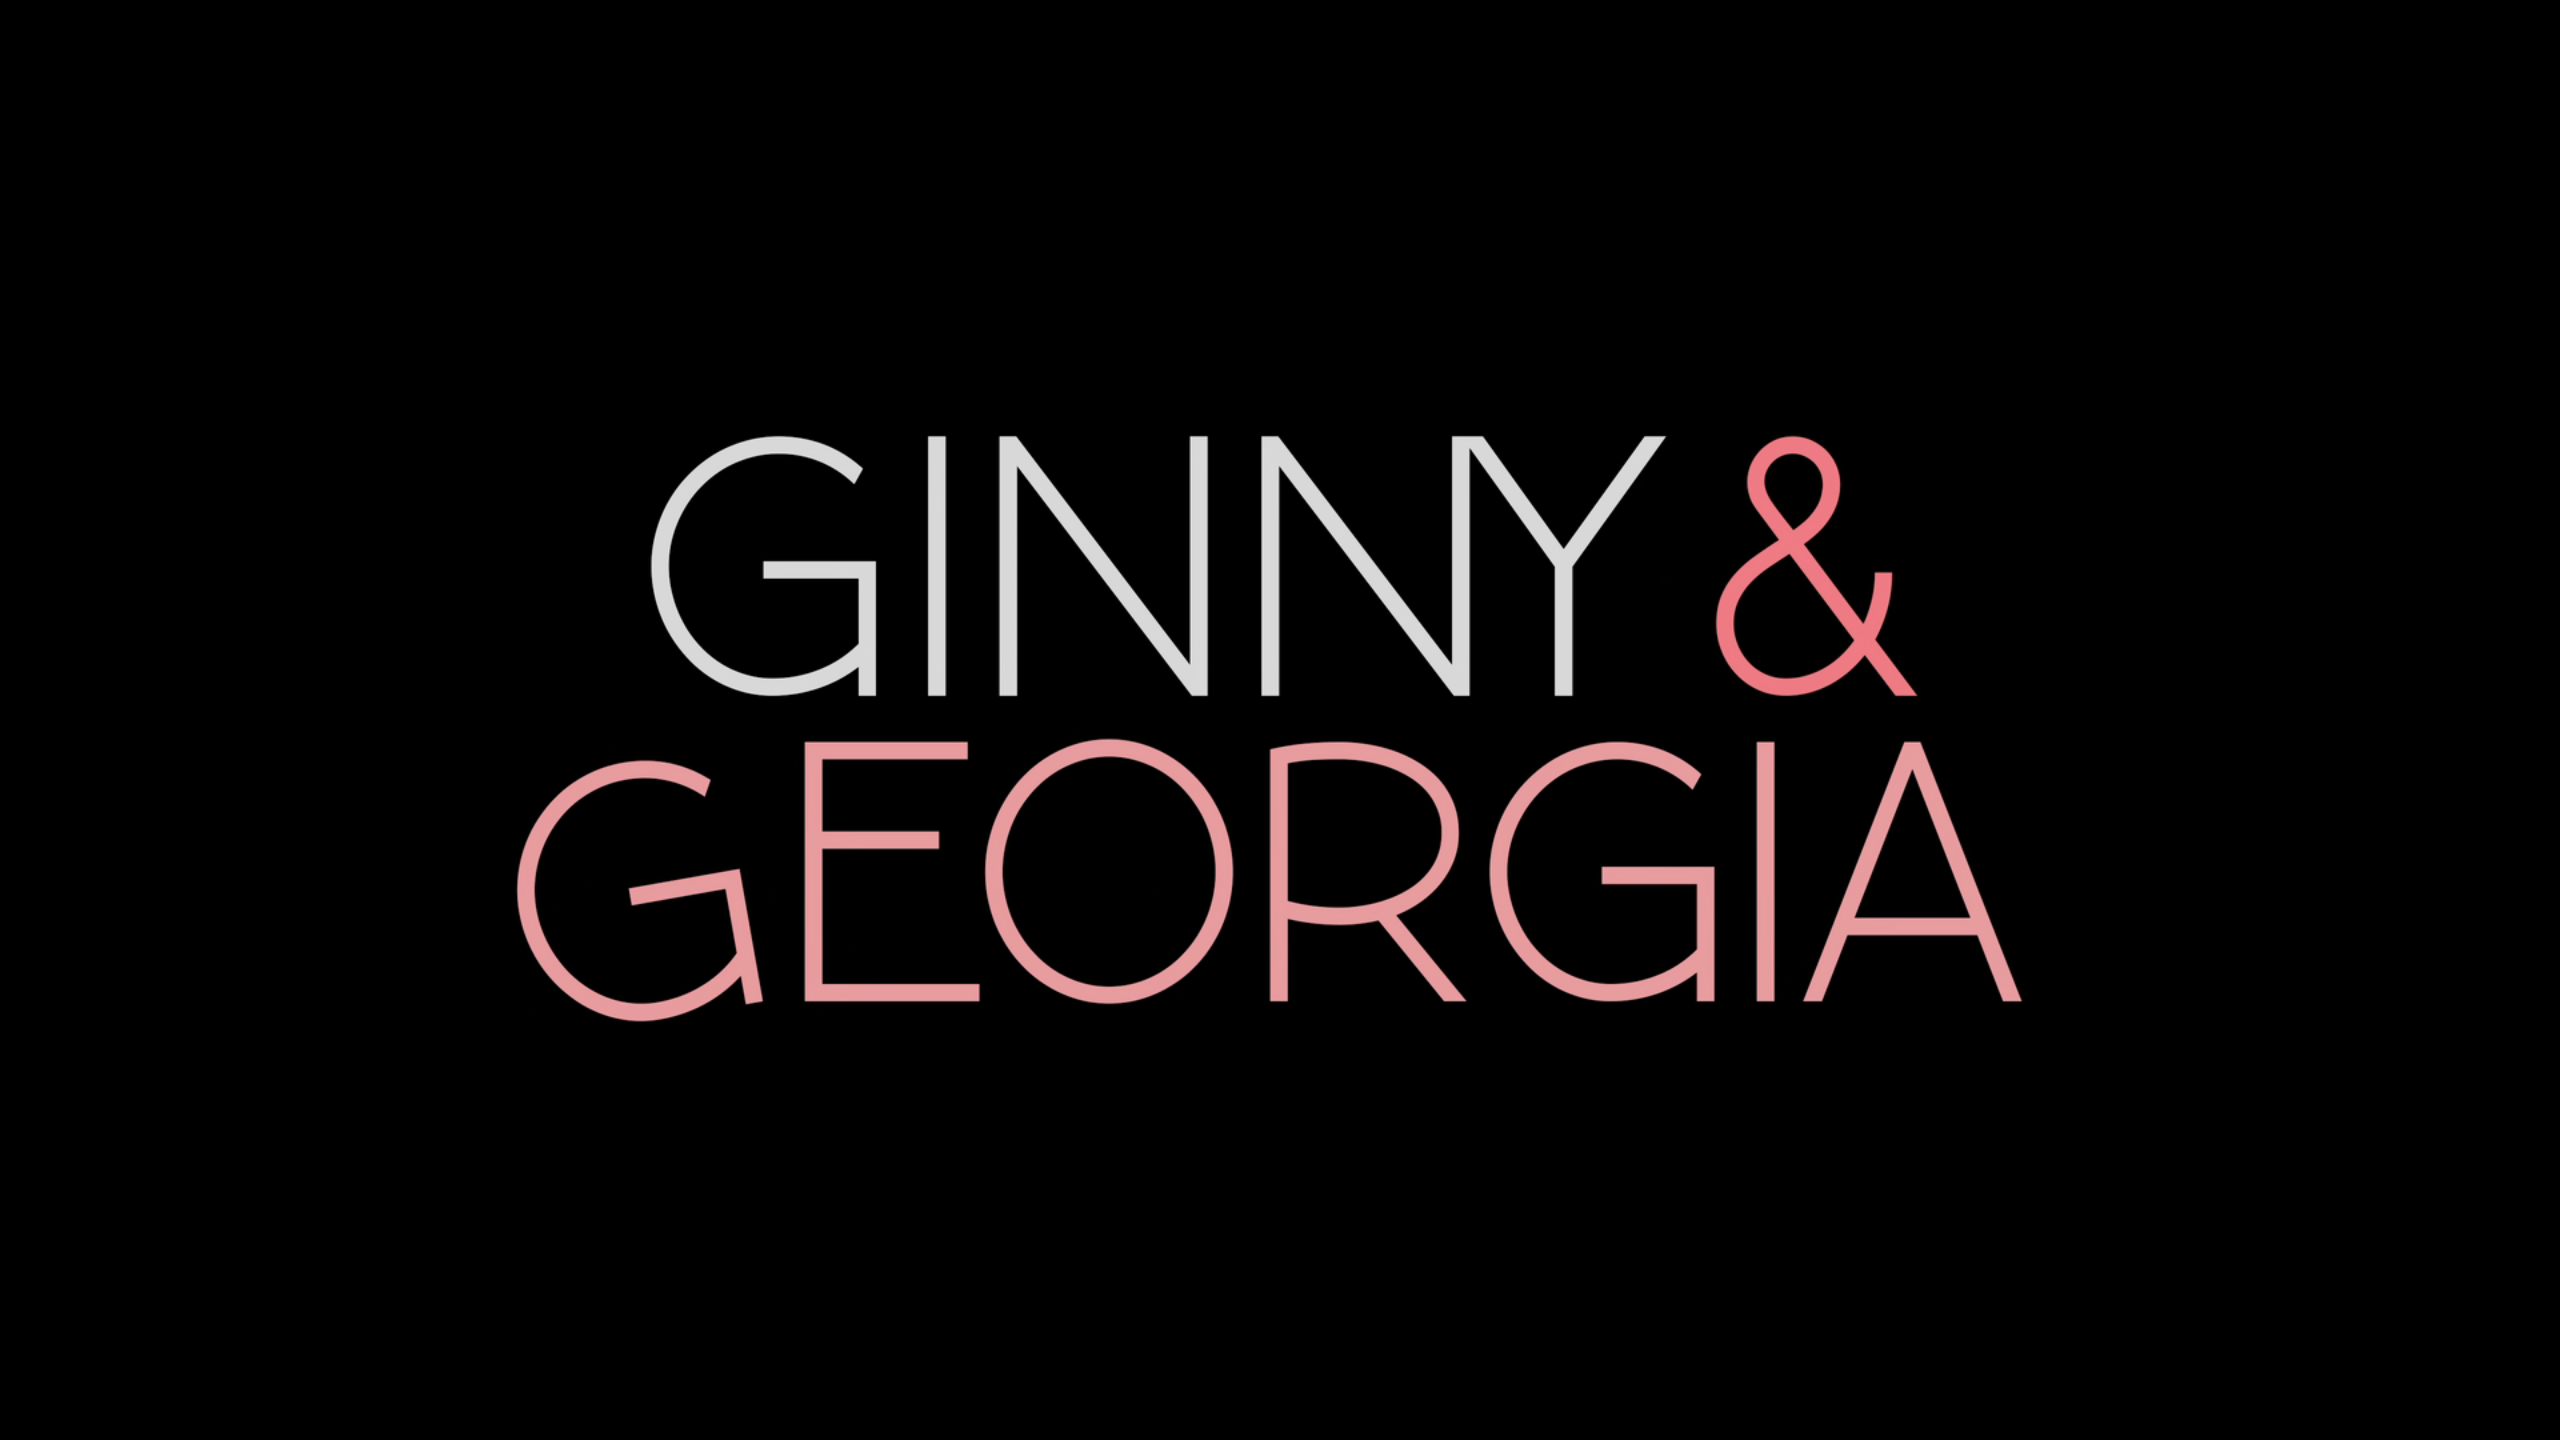 Ginny & Georgia - Wikipedia